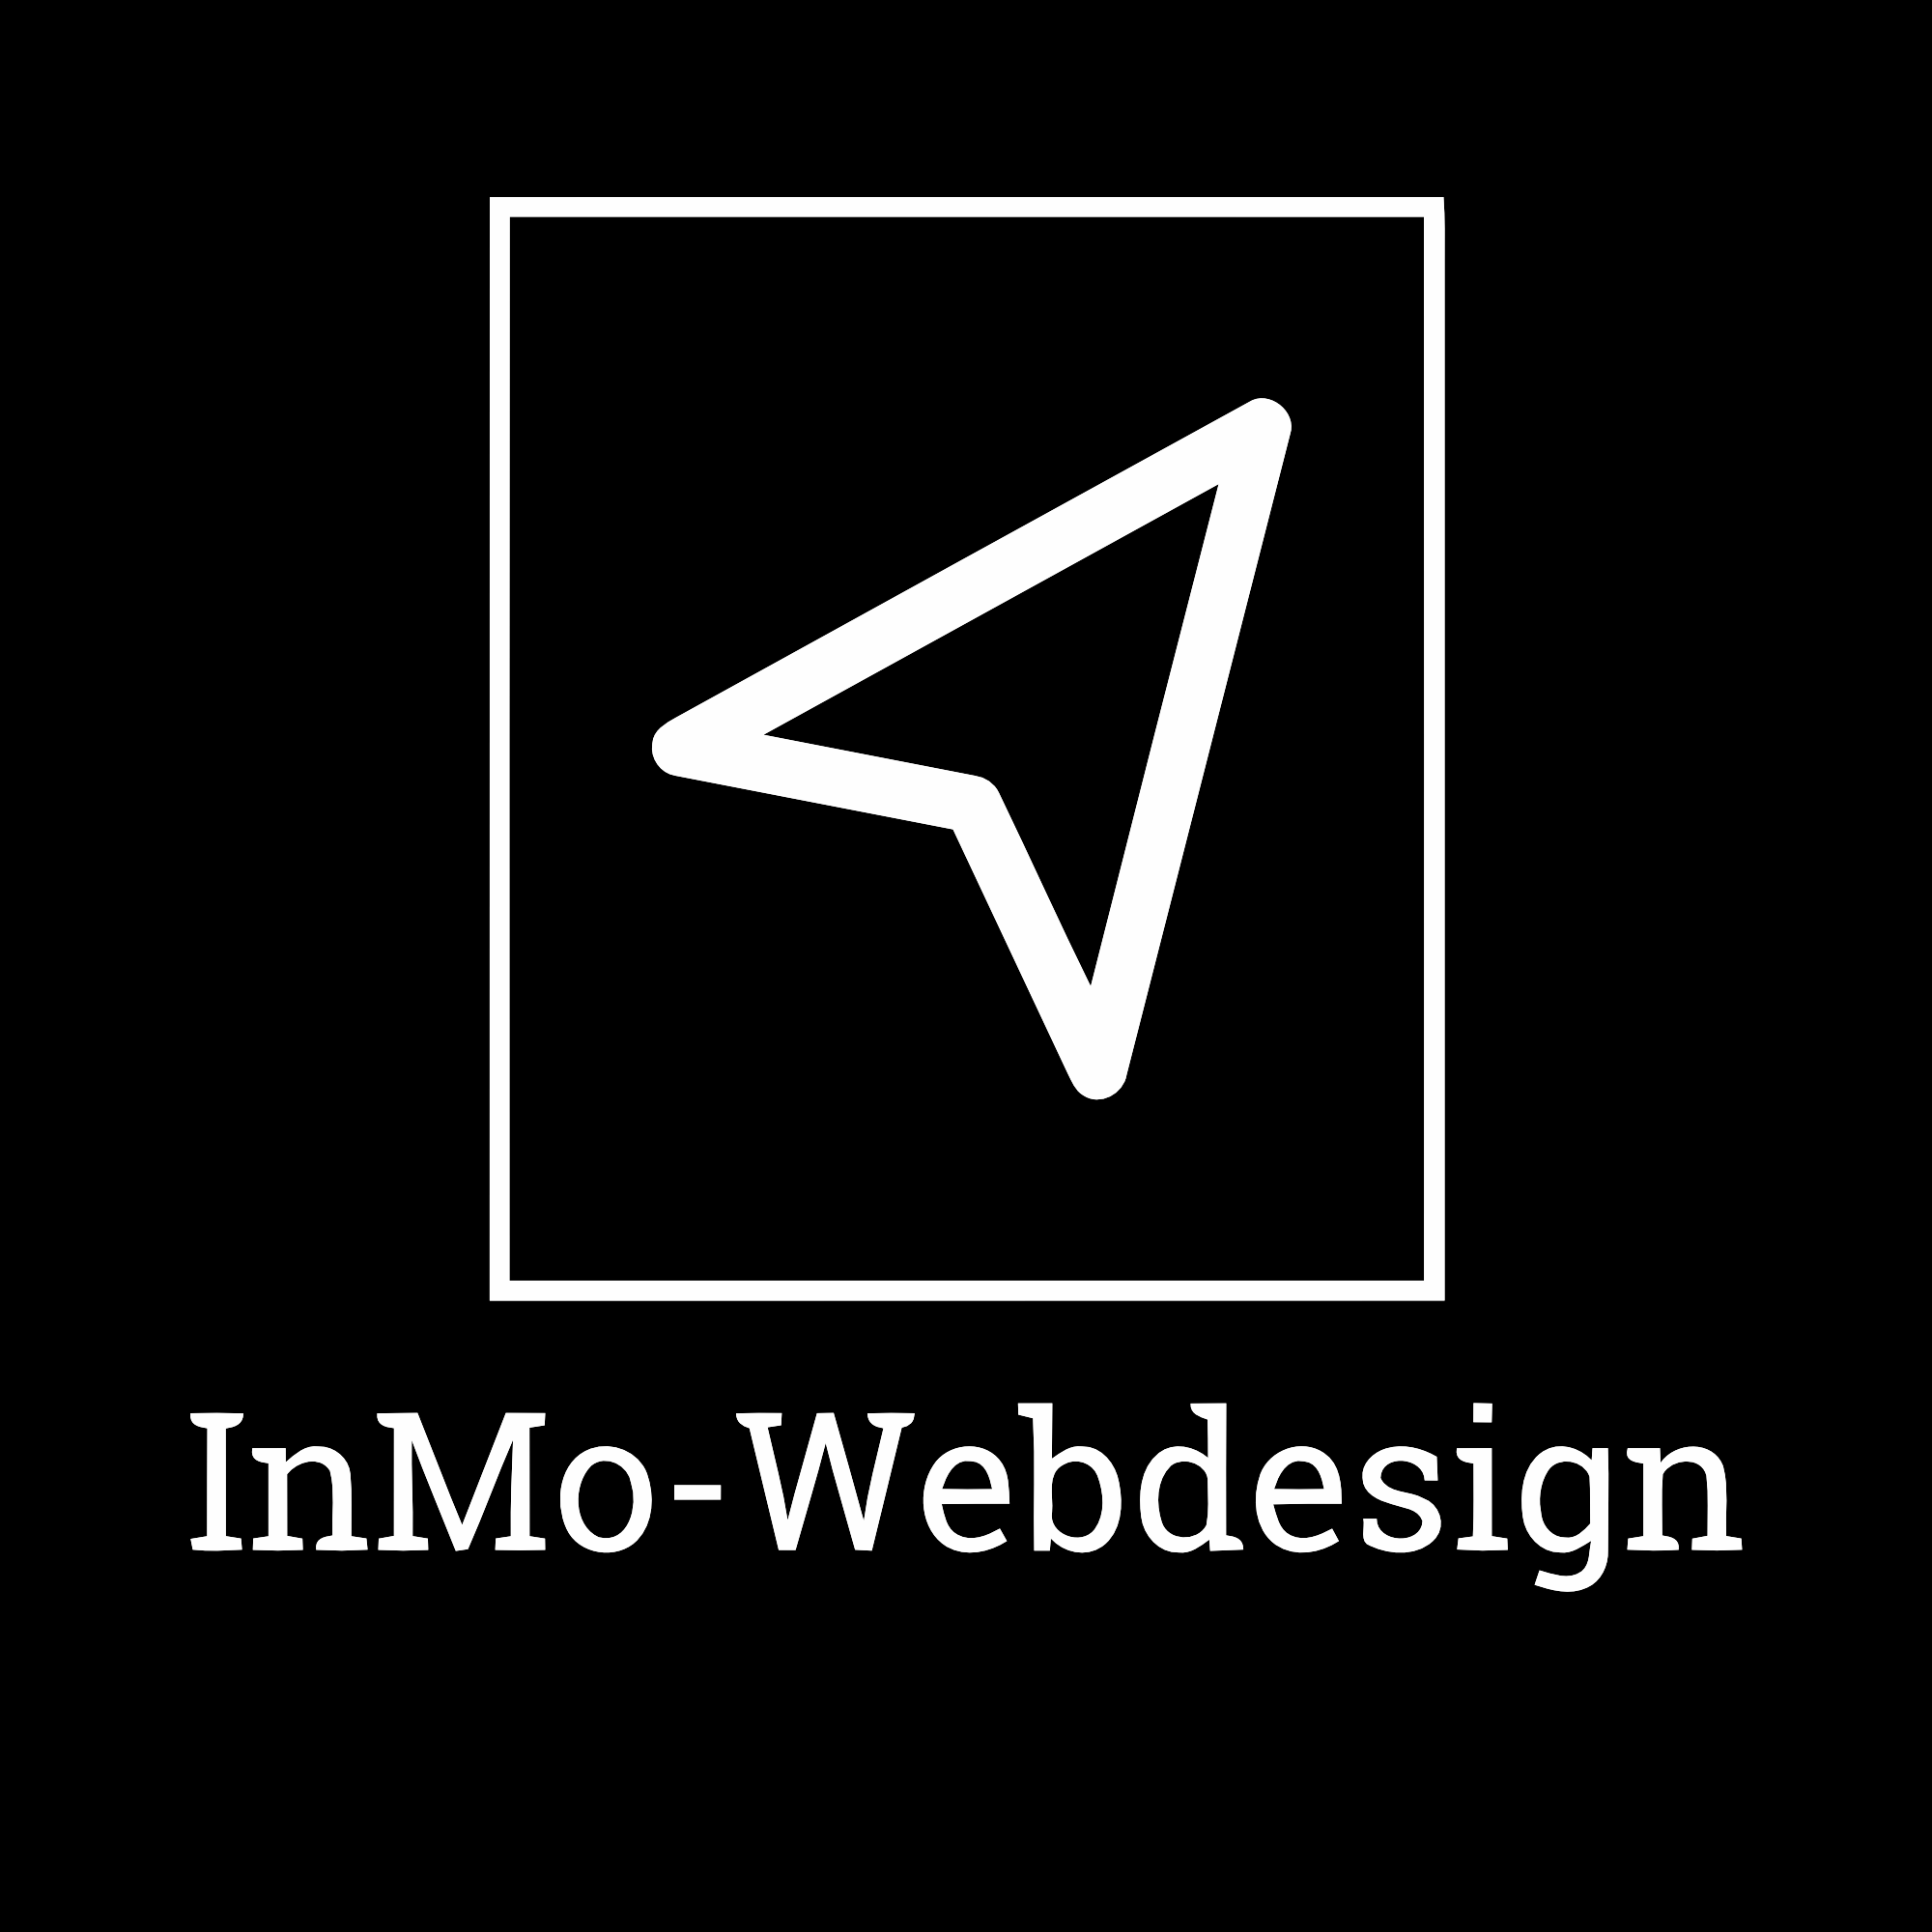 (c) Inmo-webdesign.de